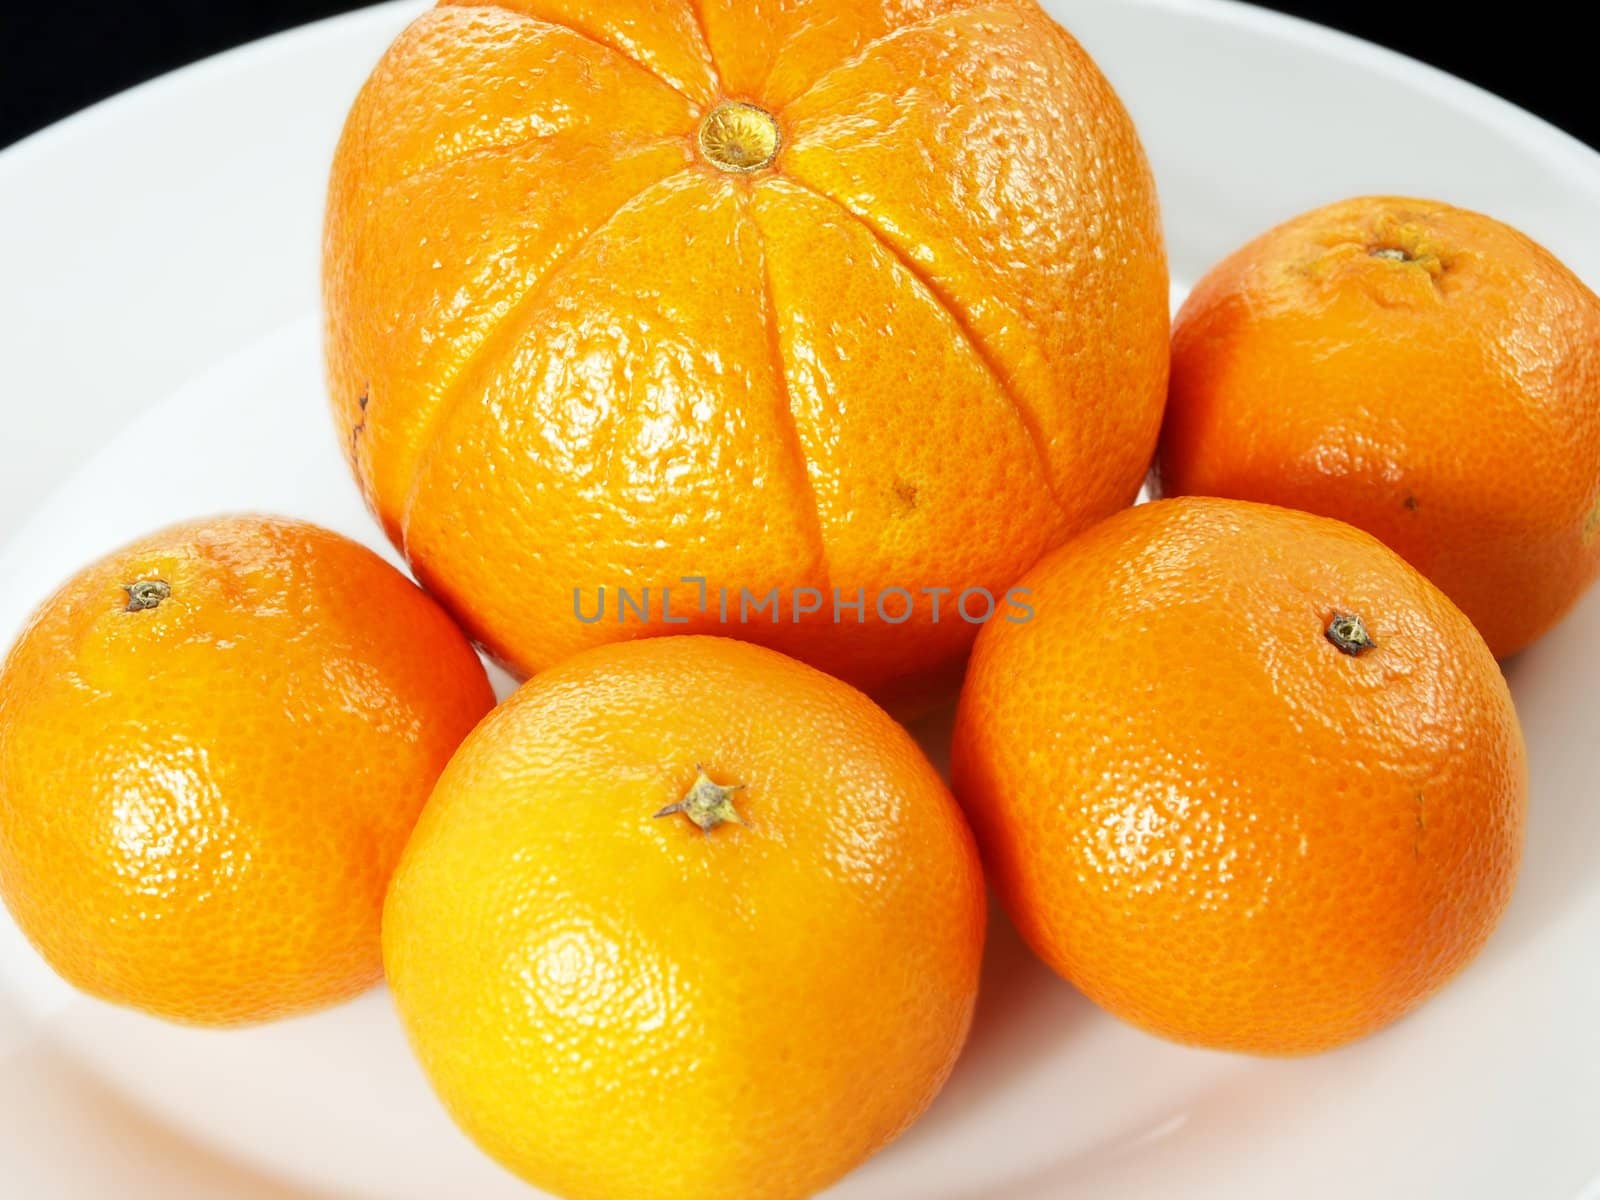 Orange and clementine by Arvebettum